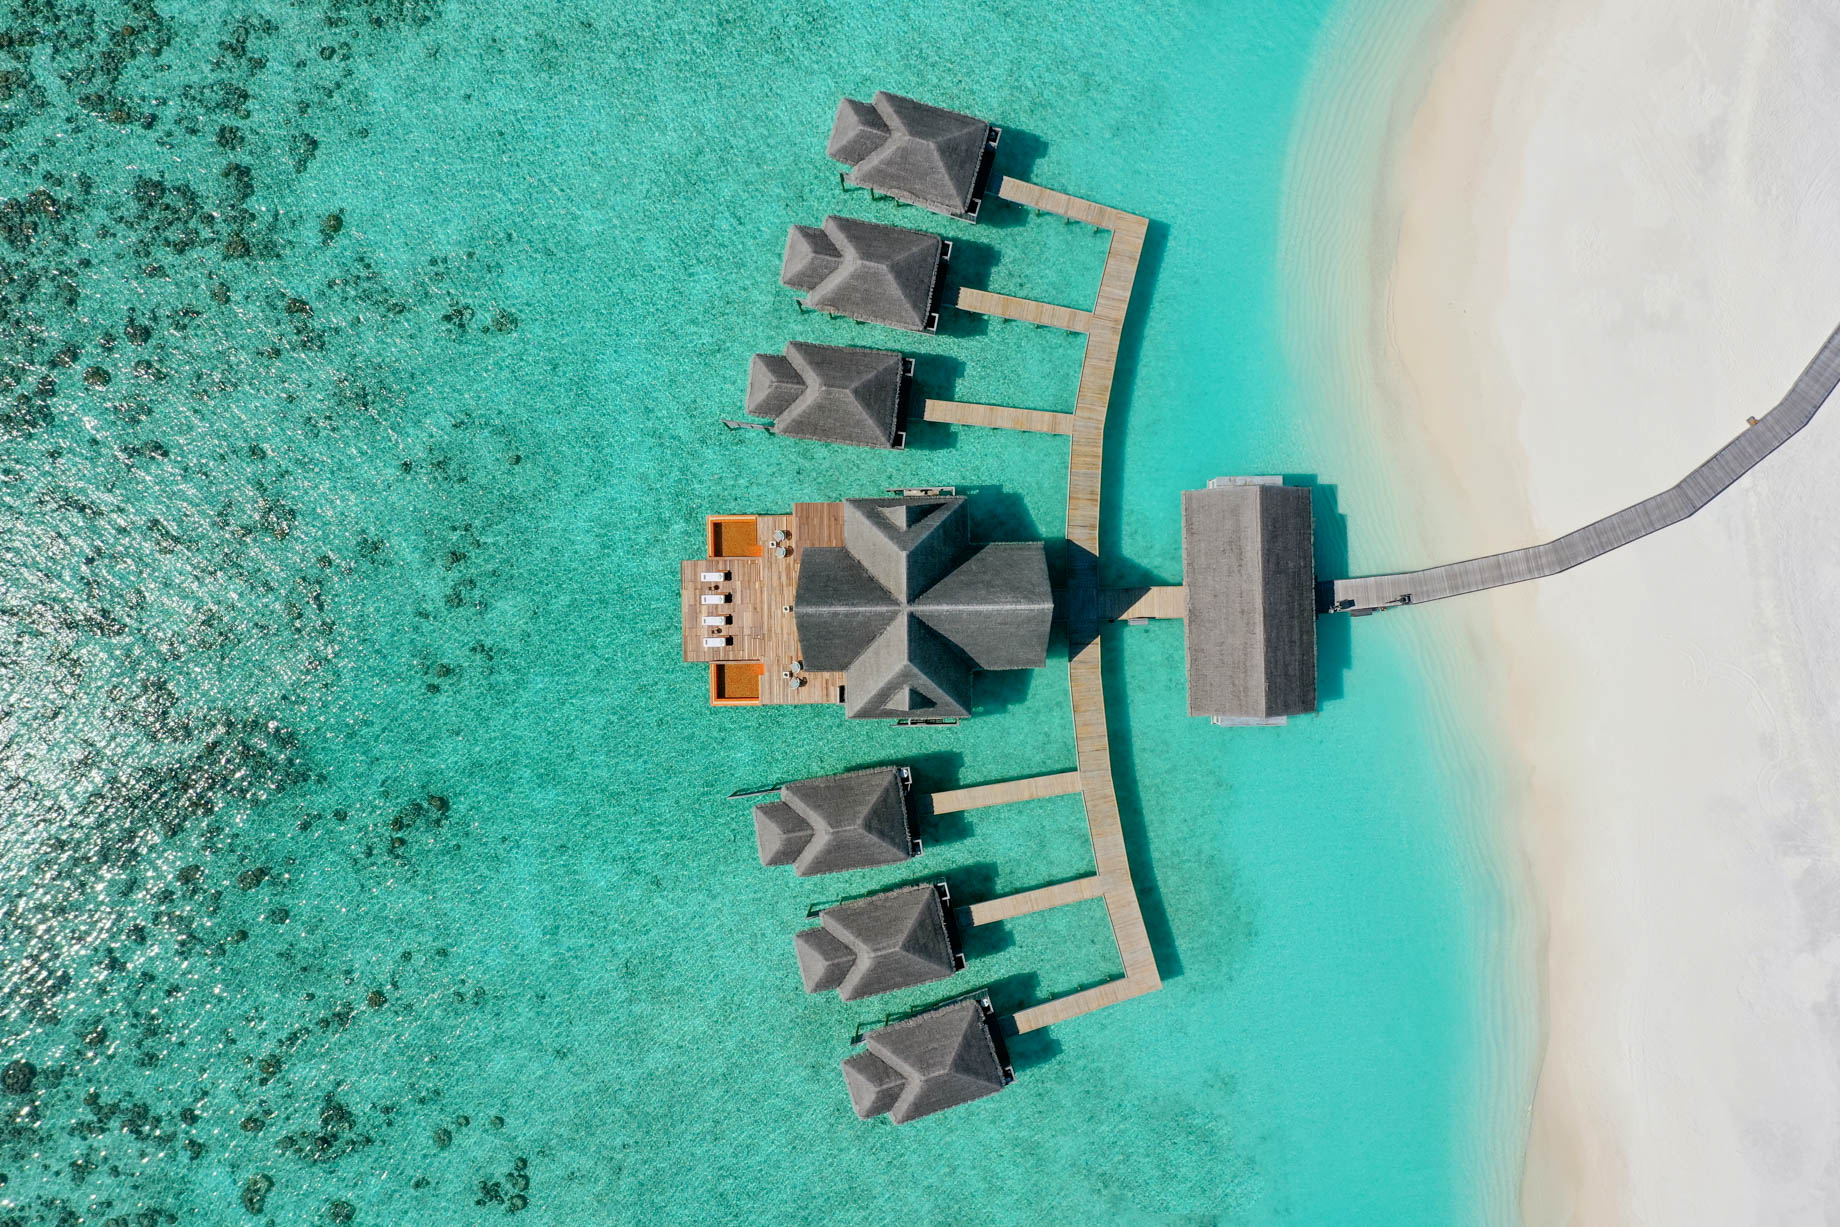 Anantara Kihavah Maldives Villas Resort - Baa Atoll, Maldives - Spa Overhead Aerial View